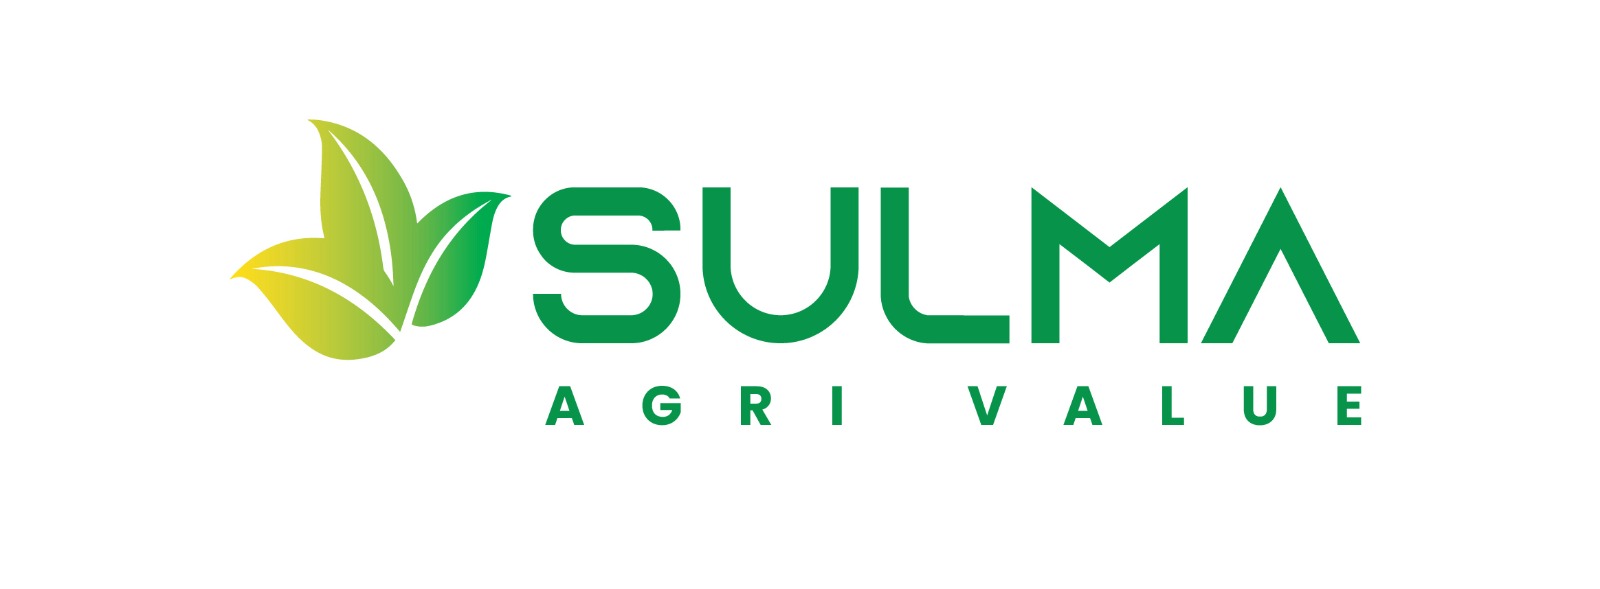 sulma-agri-value-limited